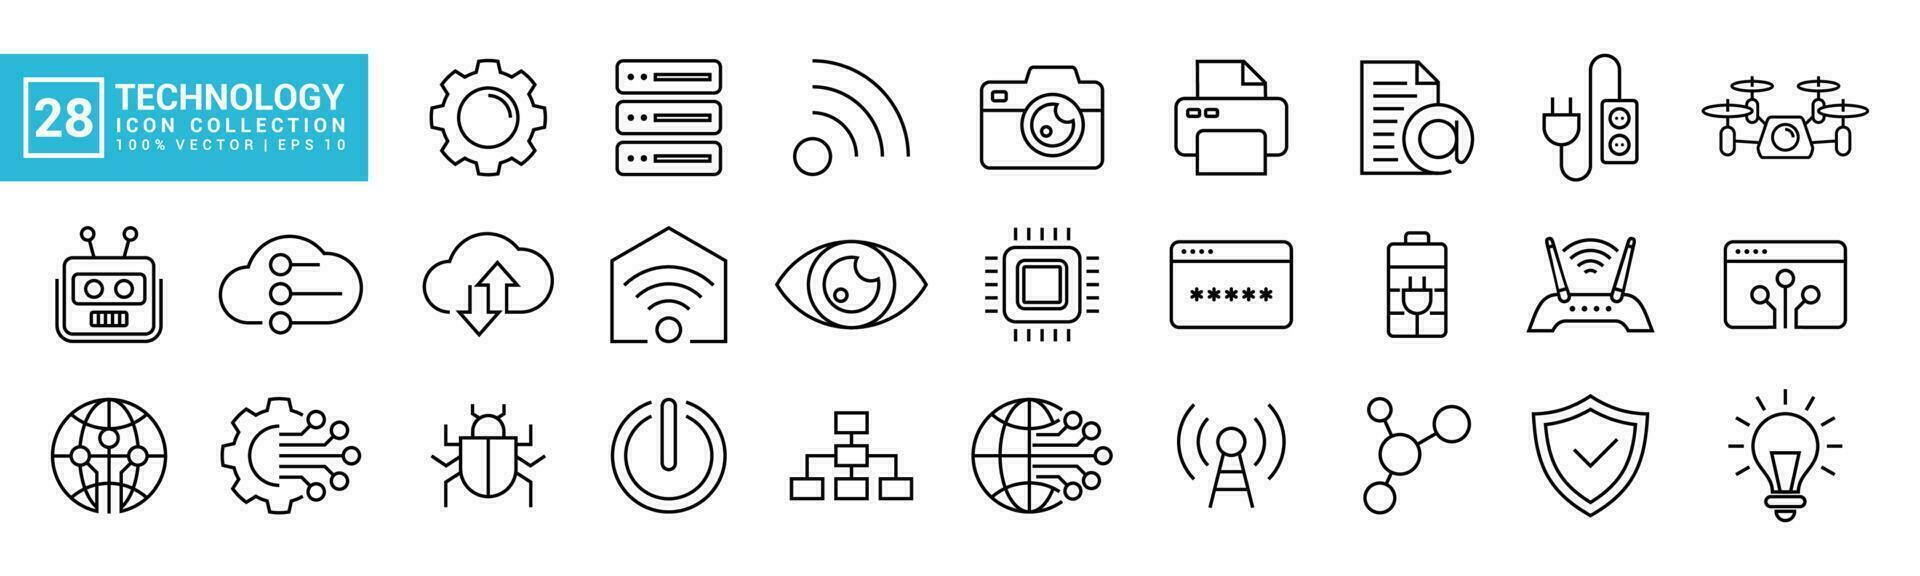 Sammlung Vektor von Technologie Symbole, gefüllt mit Kommunikation, Netzwerk, Computer Programm, Daten, es Netzwerk, editierbar und der Größe veränderbar Vektor Symbole eps 10.